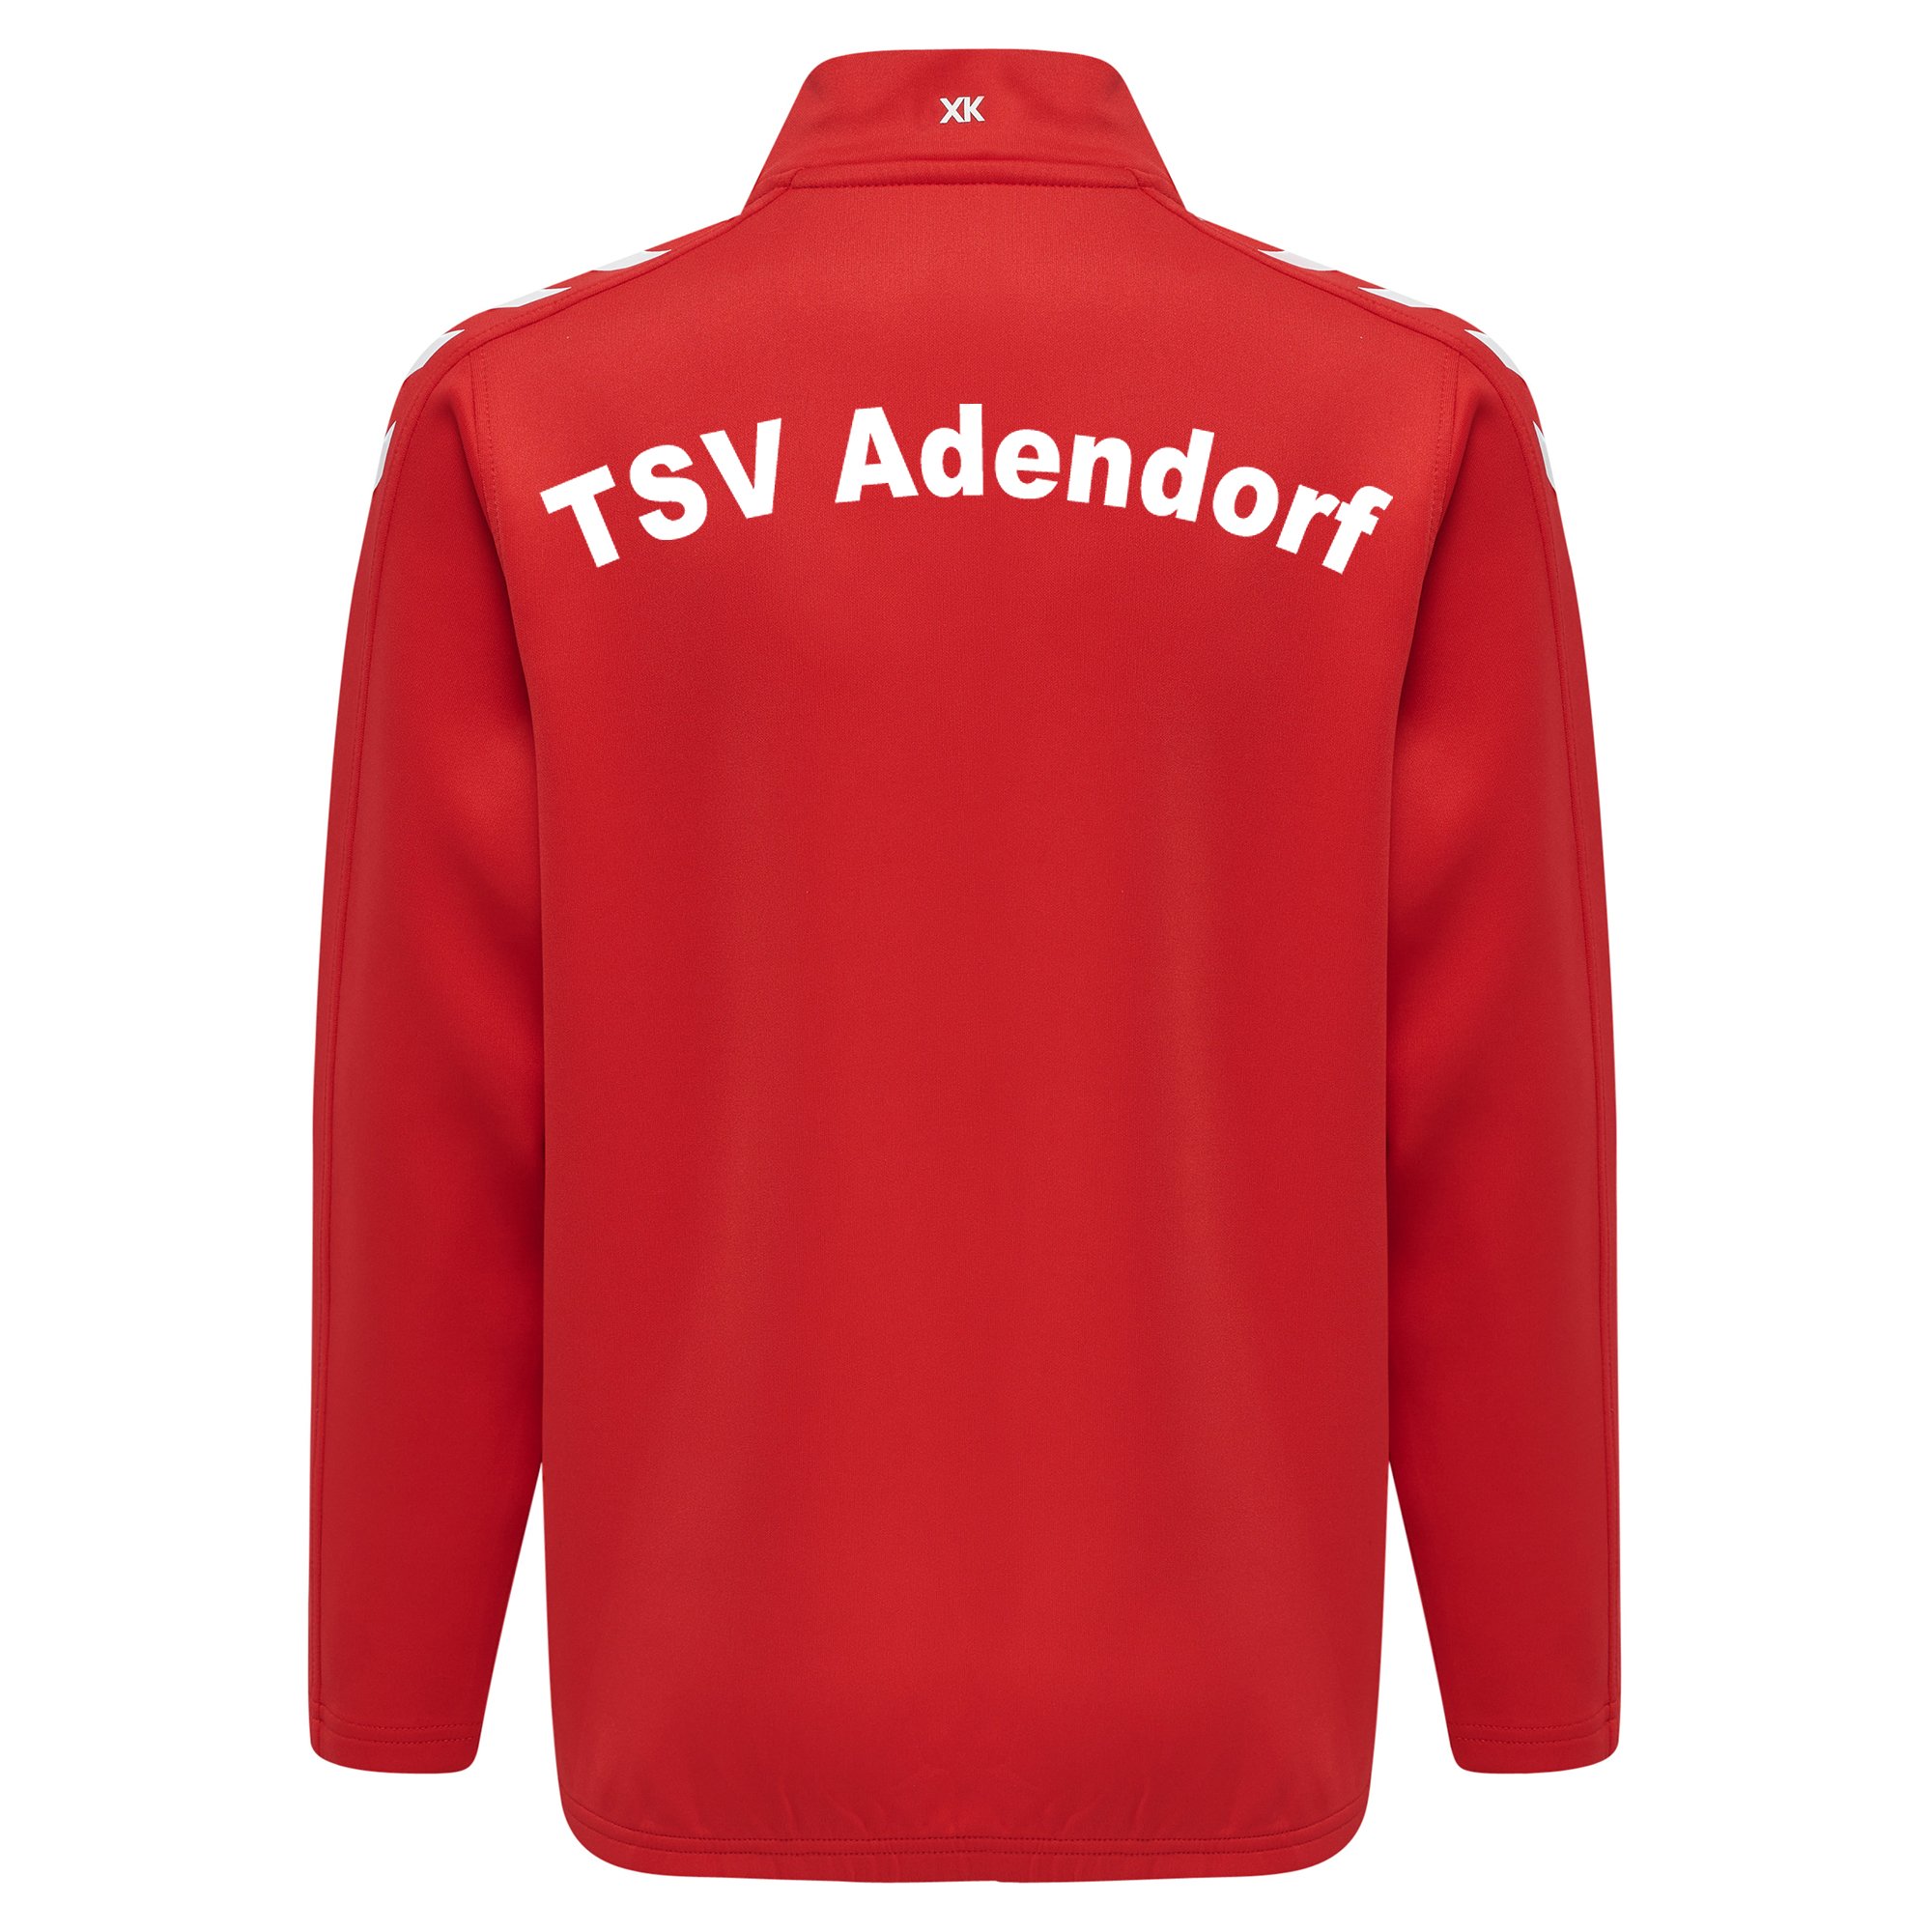 TSV Adendorf Zip Top Kinder